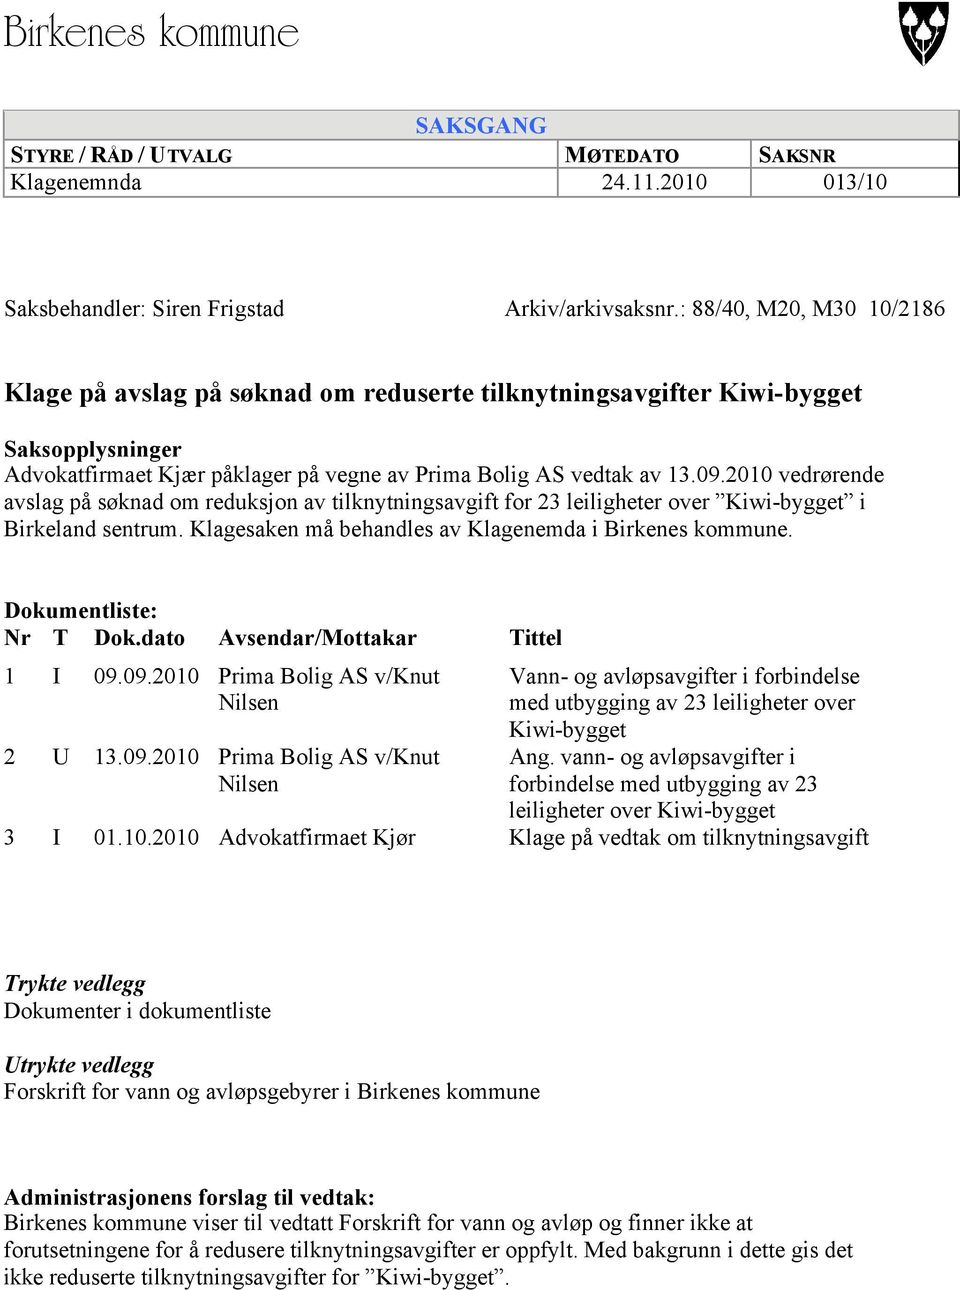 2010 vedrørende avslag på søknad om reduksjon av tilknytningsavgift for 23 leiligheter over Kiwi-bygget i Birkeland sentrum. Klagesaken må behandles av Klagenemda i Birkenes kommune.